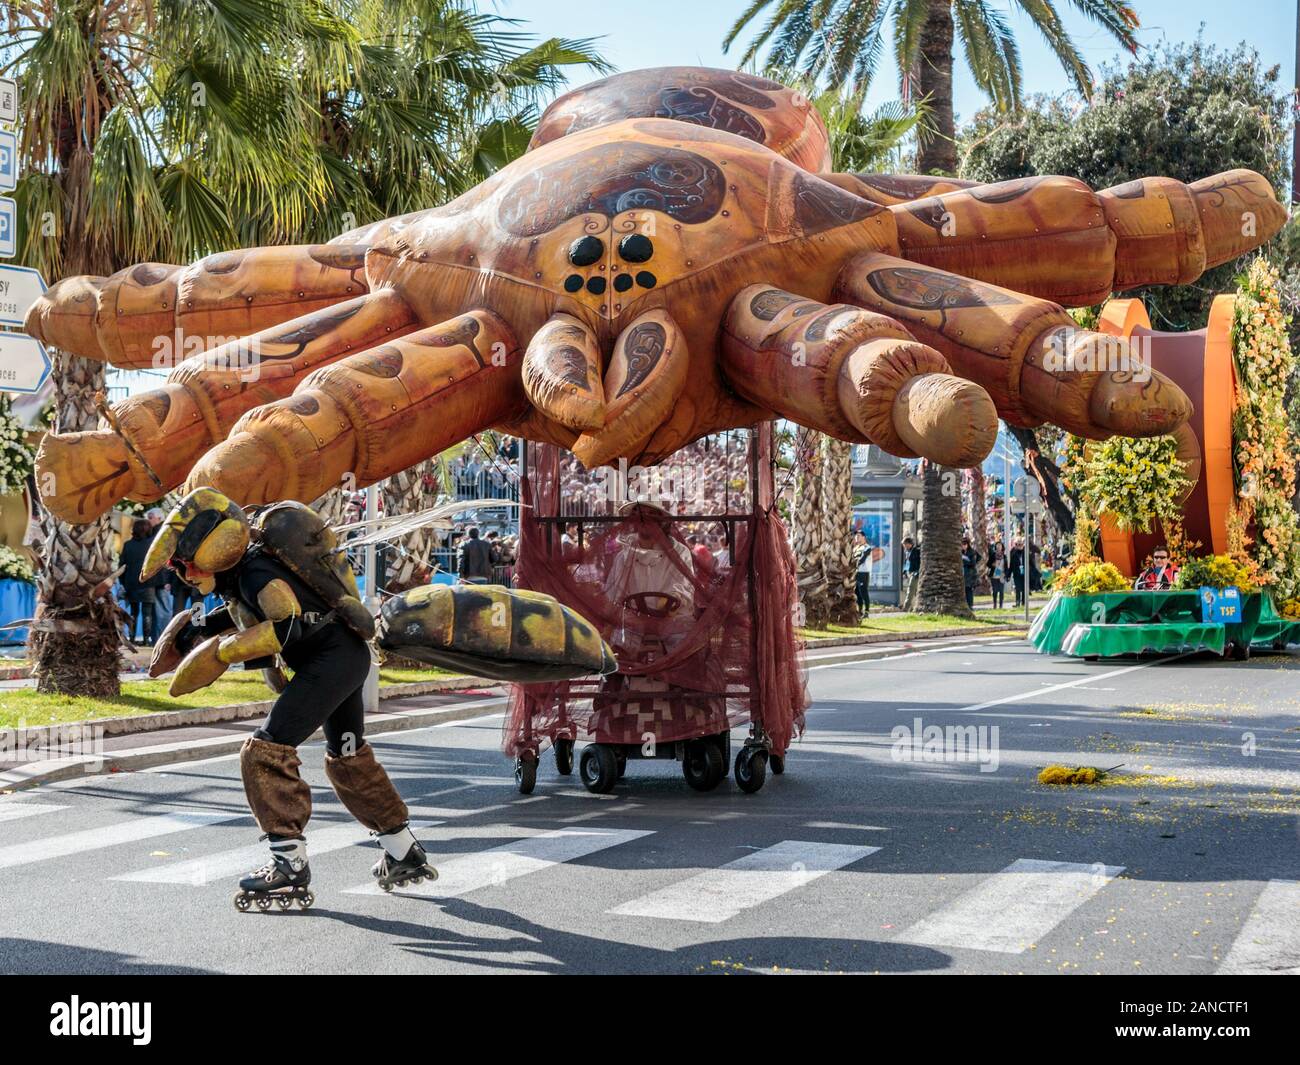 Darsteller, die als Biene gekleidet sind und einen riesigen Spinnenballon auf der Blumenparade, dem Karneval in Nizza, an der französischen Riviera, Cote d'Azur, ziehen. Stockfoto